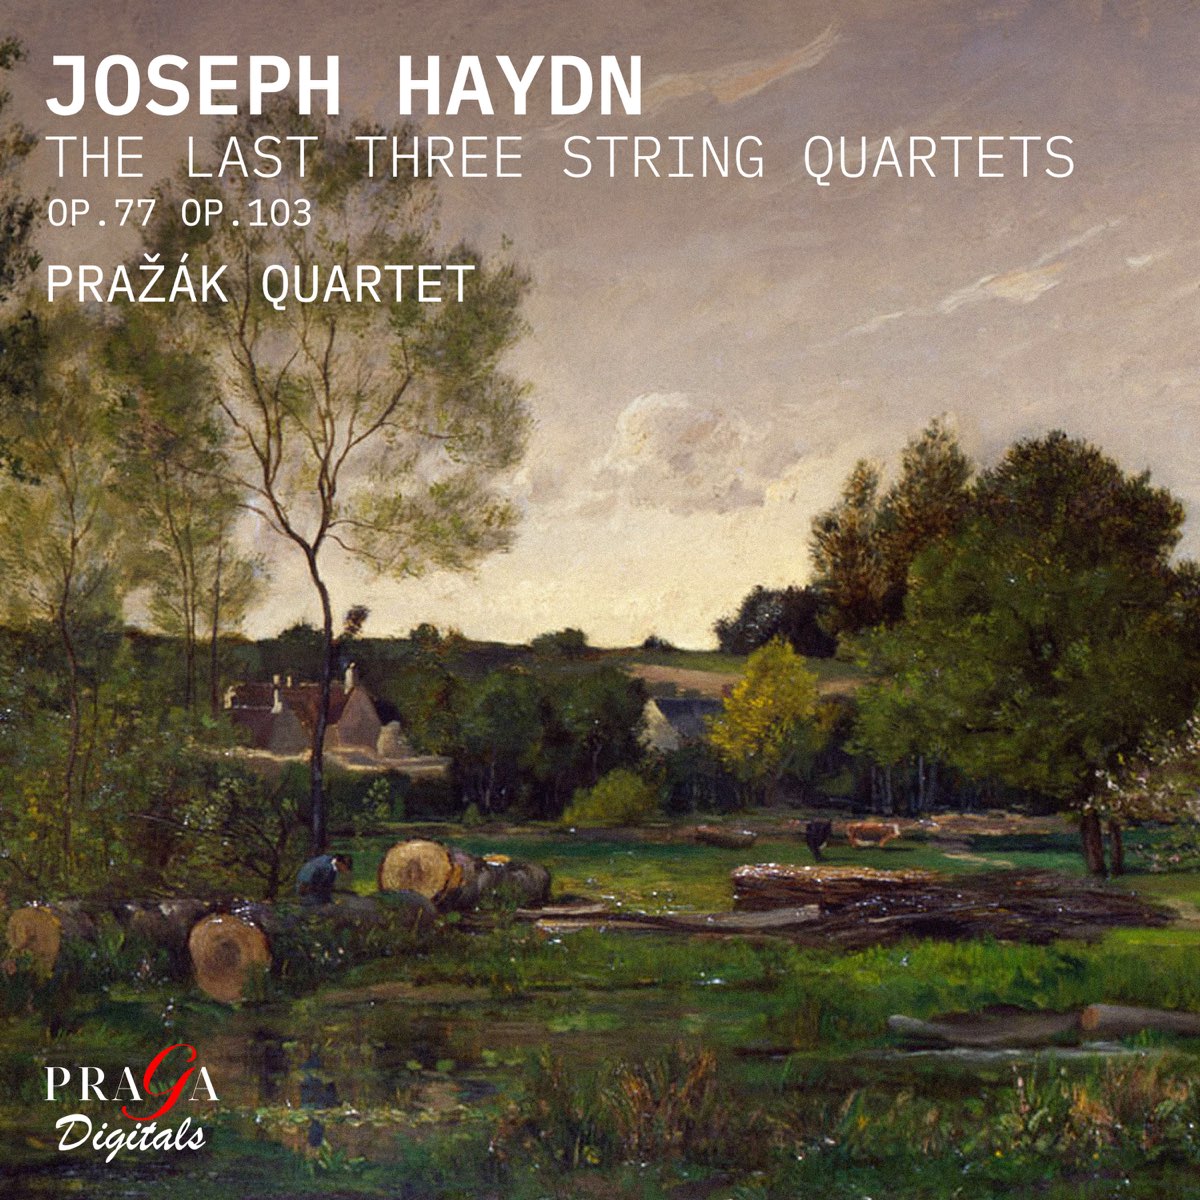 Prazak Quartet - Haydn: The Last Three String Quartets (2021) [FLAC 24bit/96kHz]